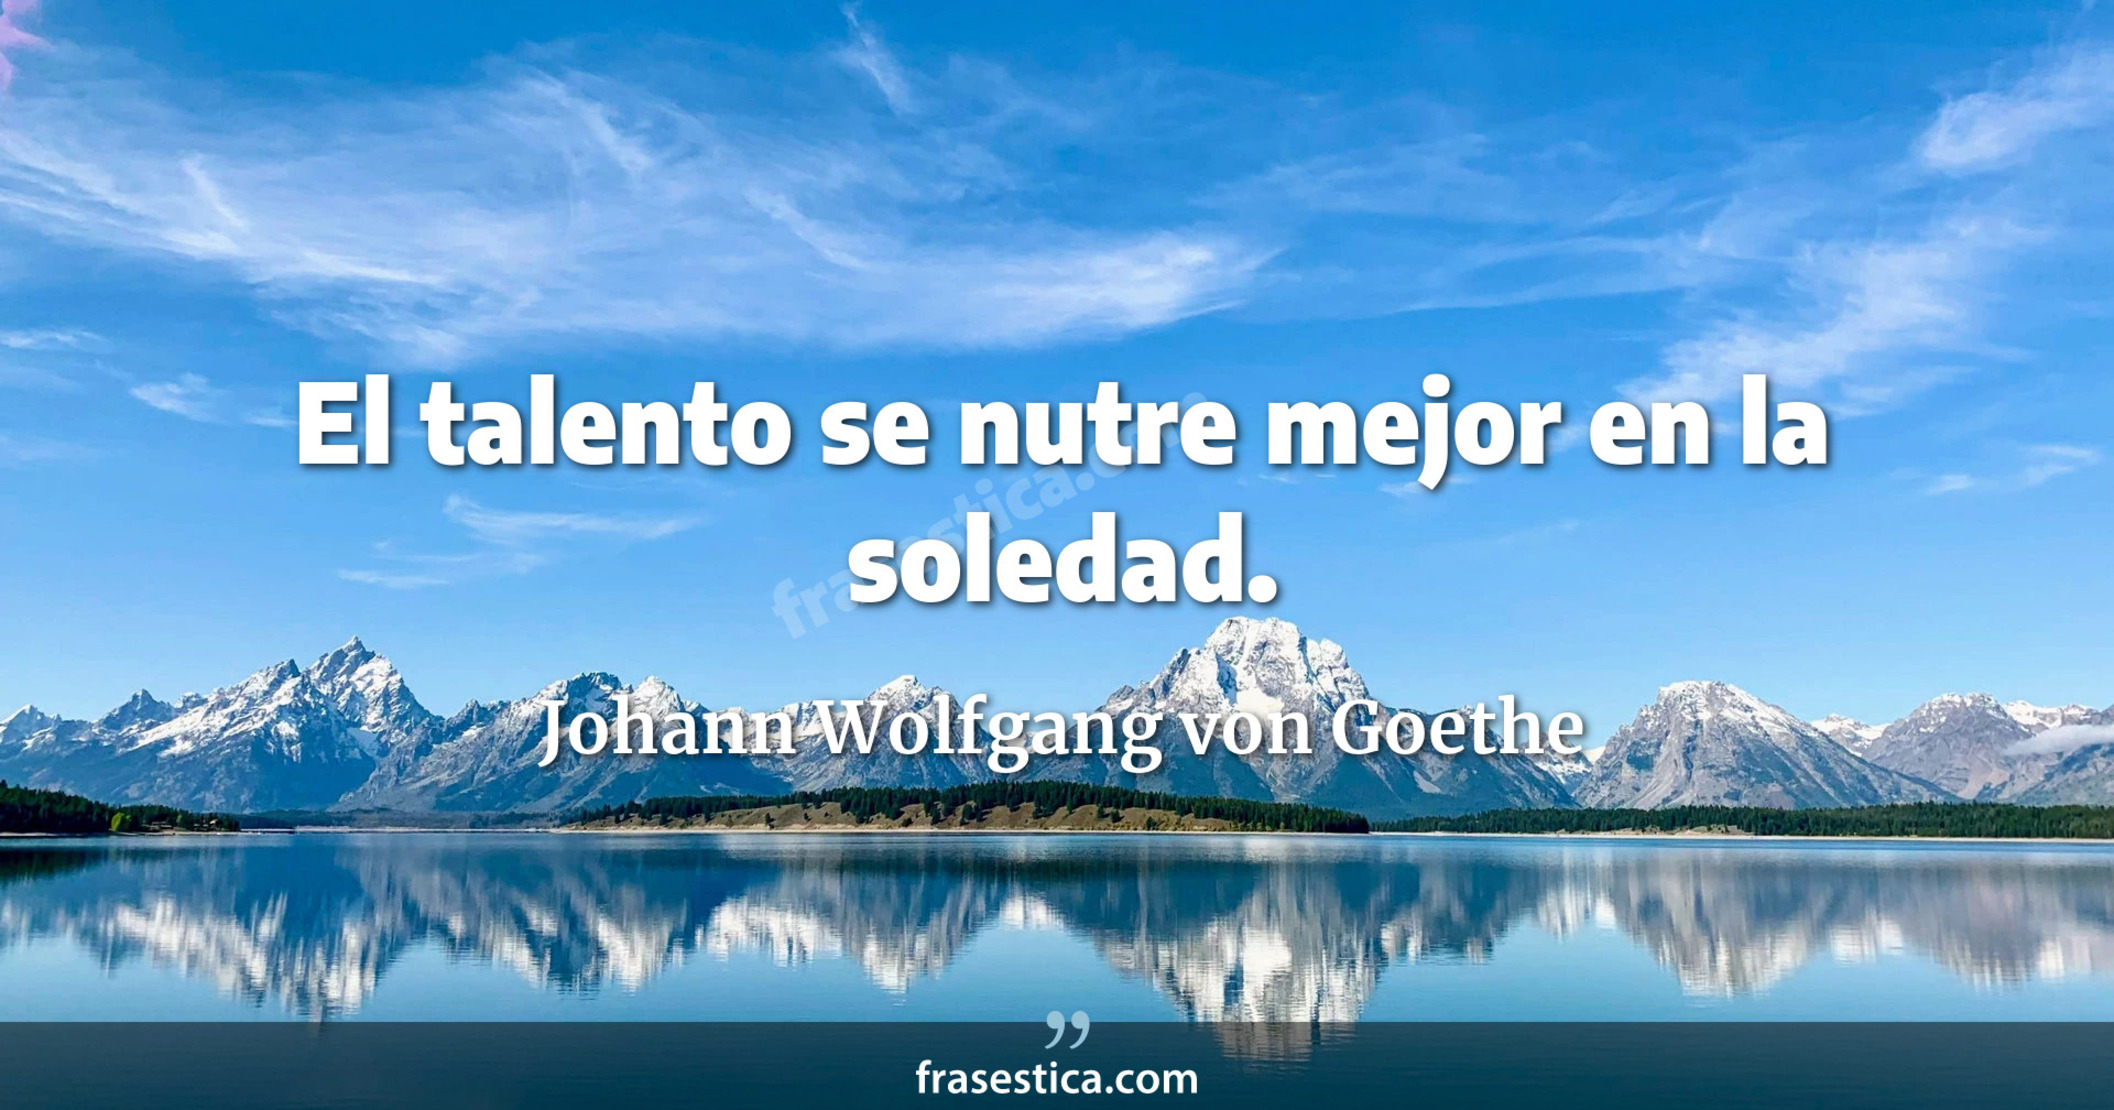 El talento se nutre mejor en la soledad. - Johann Wolfgang von Goethe